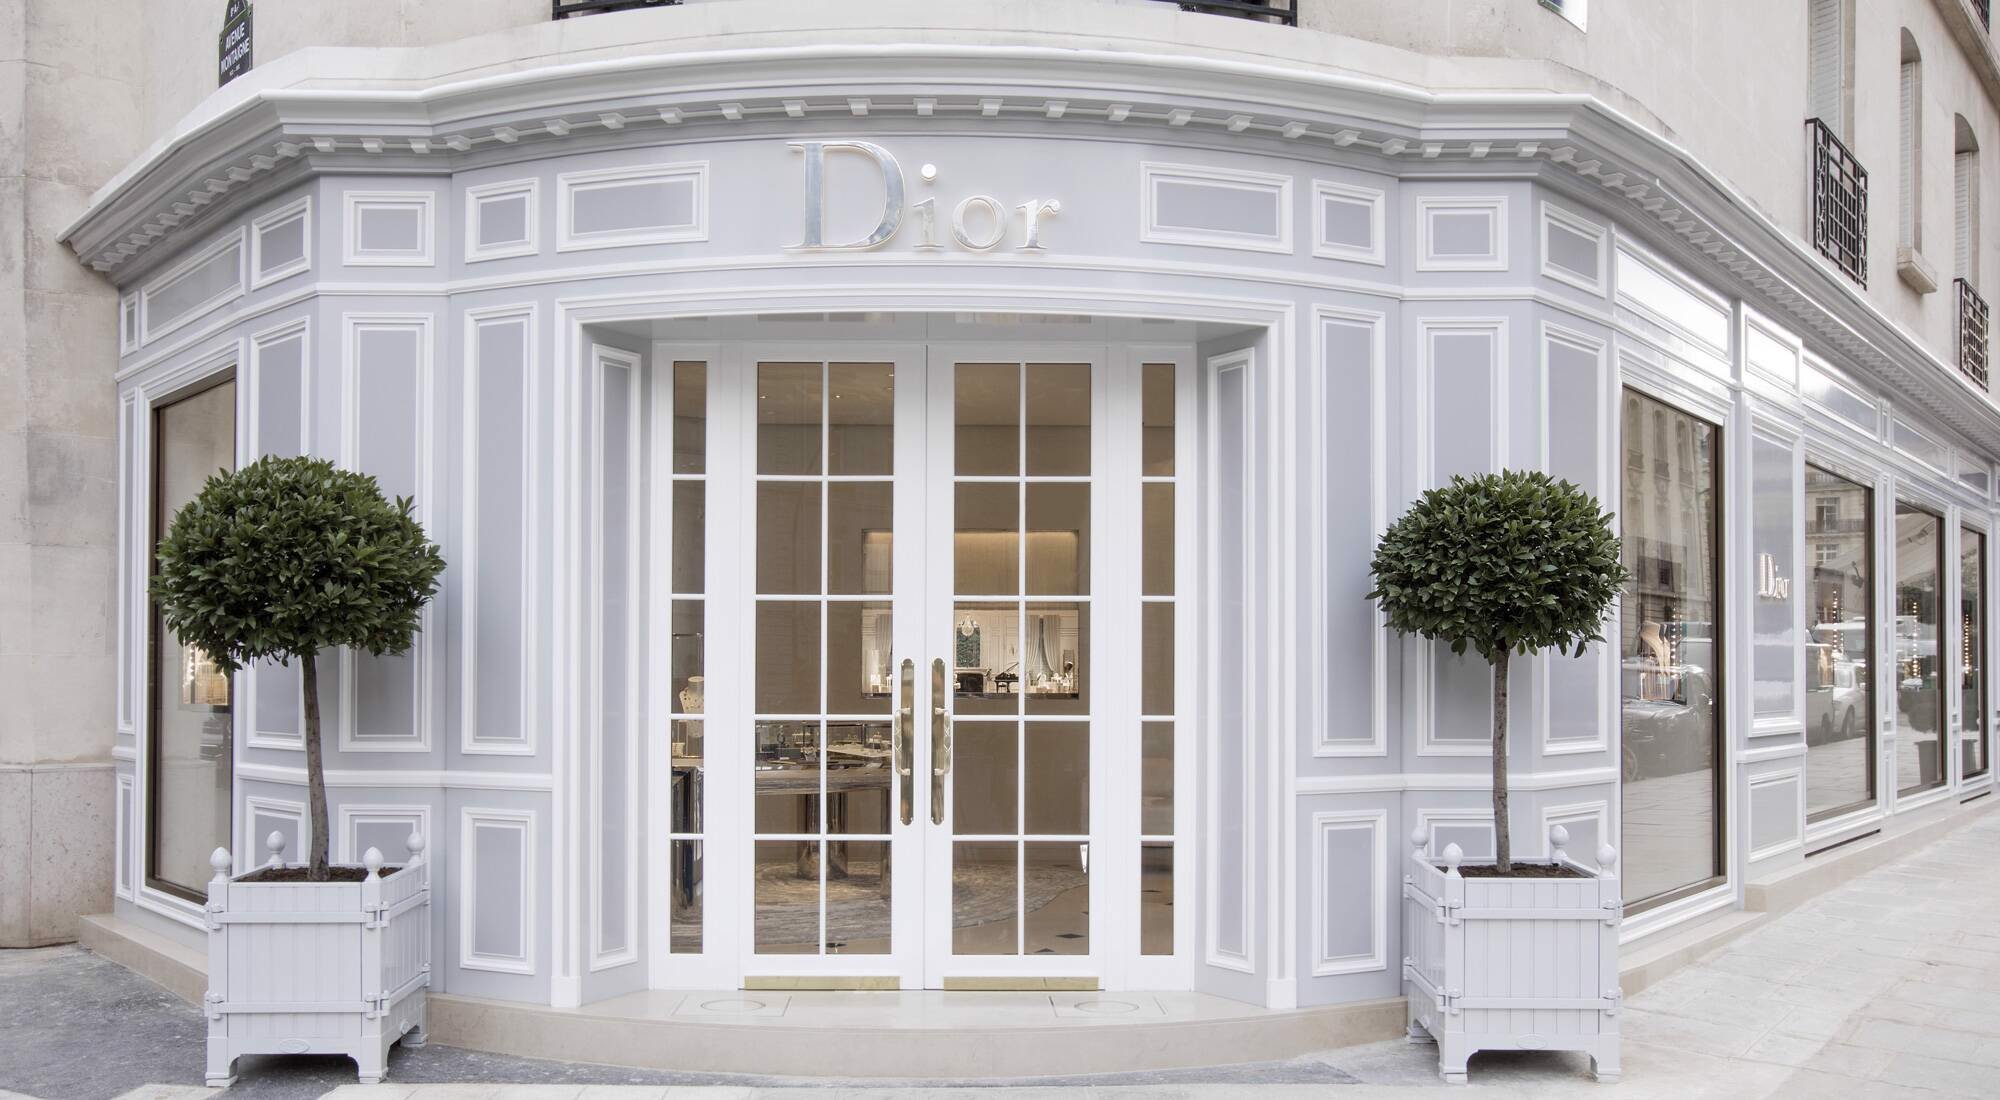 Câu chuyện lịch sử của thương hiệu Dior  Coolmate